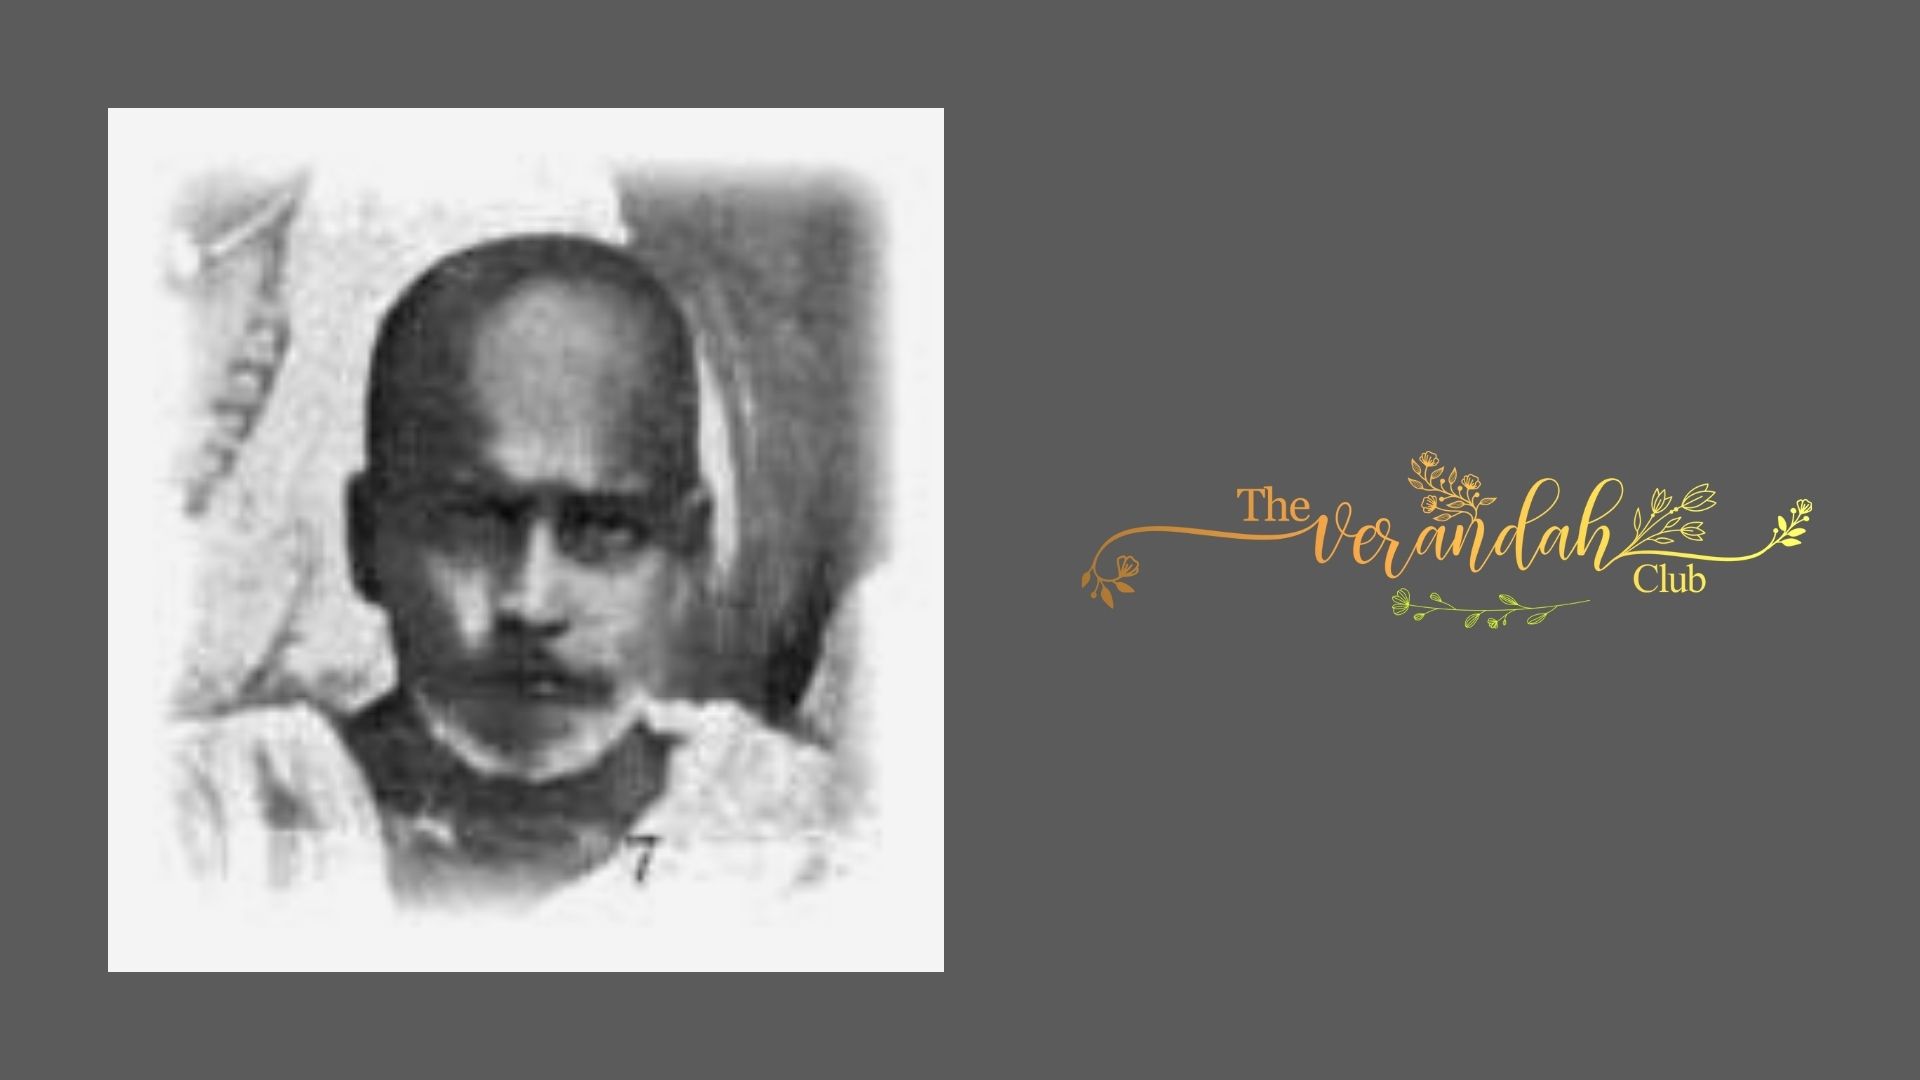 The amazing violinist Thirukkodikaval Krishnayyar ( 1857 - 1913 )